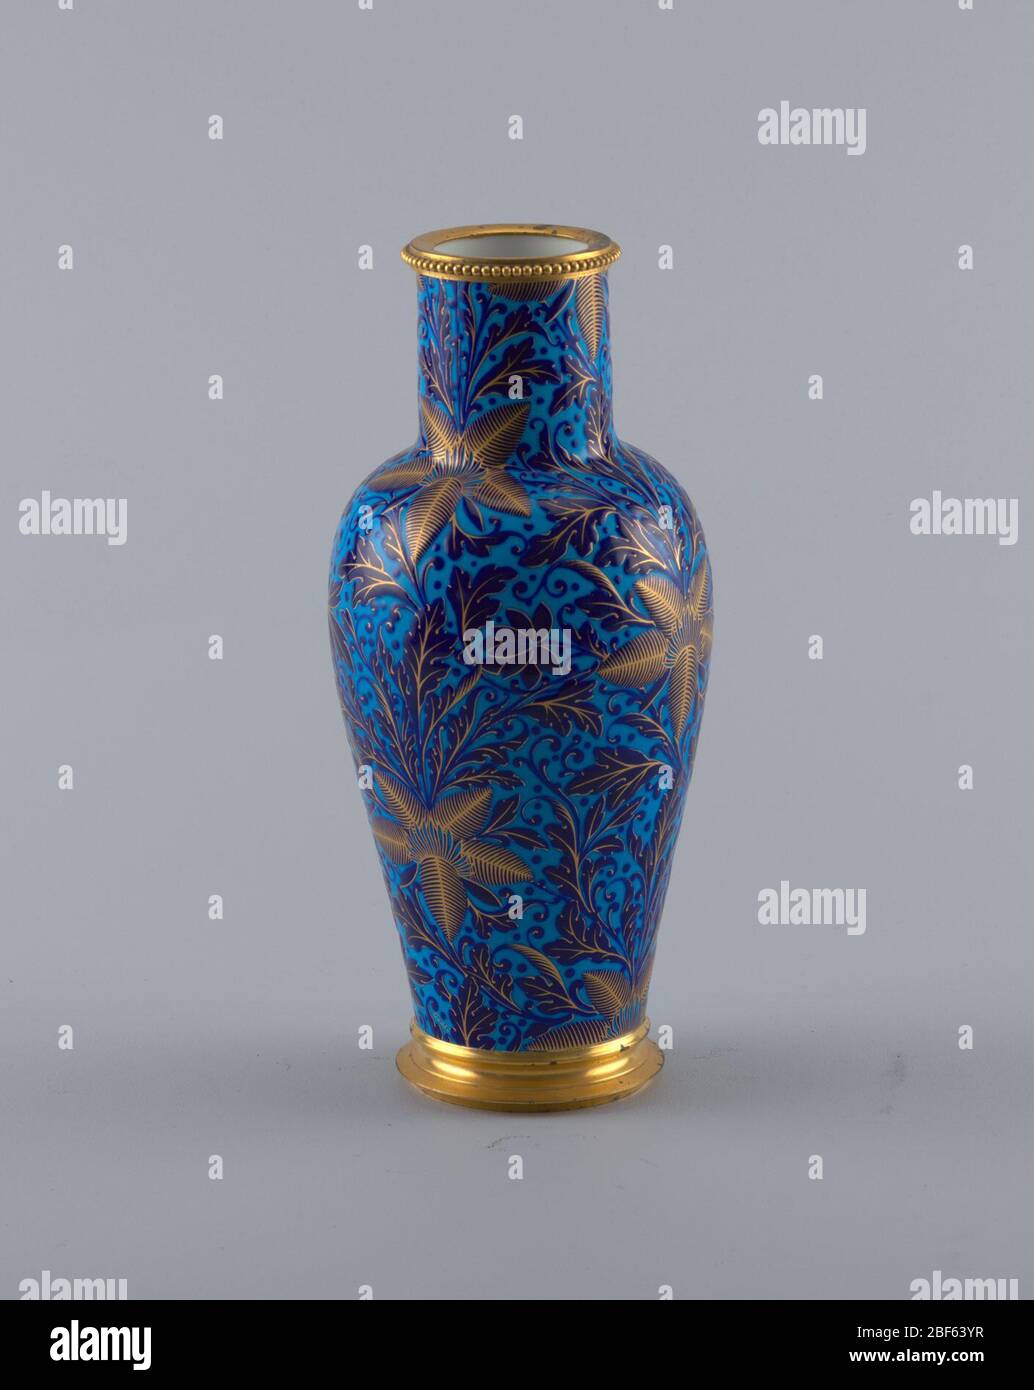 Chinois Ly. Vase en porcelaine bleue avec détails dorés. Vase est décoré avec un motif de grandes feuilles sous forme d'étoiles. Le pied empilé et la lèvre ornée de perles sont tous deux finis en or. Banque D'Images